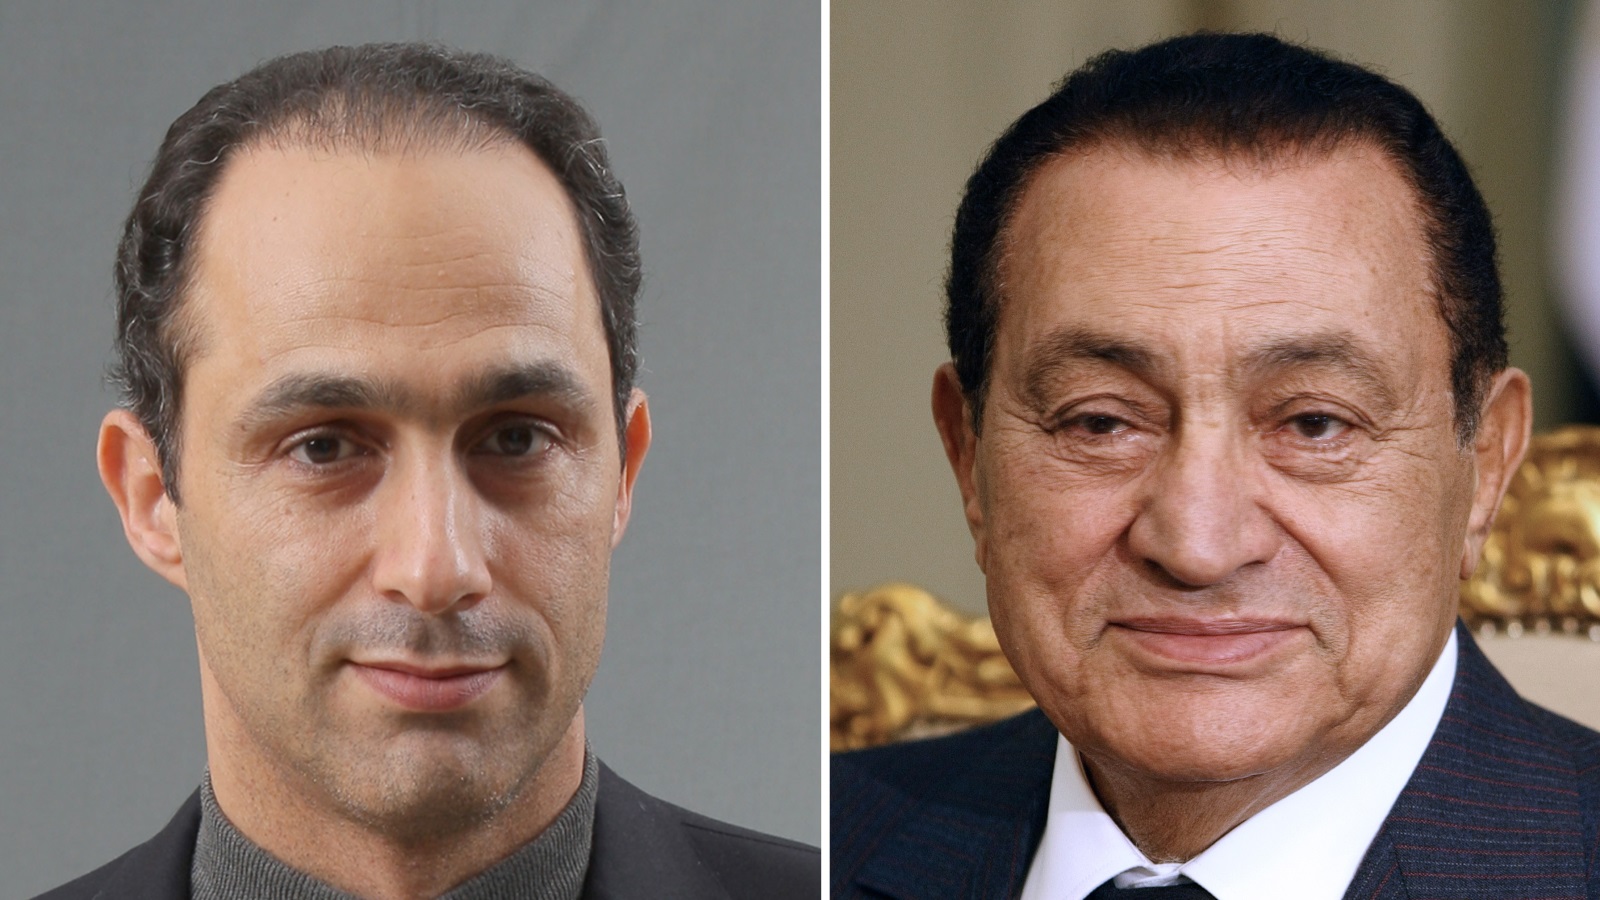 هذا هو جمال مبارك أمين لجنة السياسات بالحزب الوطني الذي أفسد الحياة السياسية في مصر بأكملها ودفعها للانفجار قهراً في وجهه ووجه أبيه.(حسني وجمال مبارك)